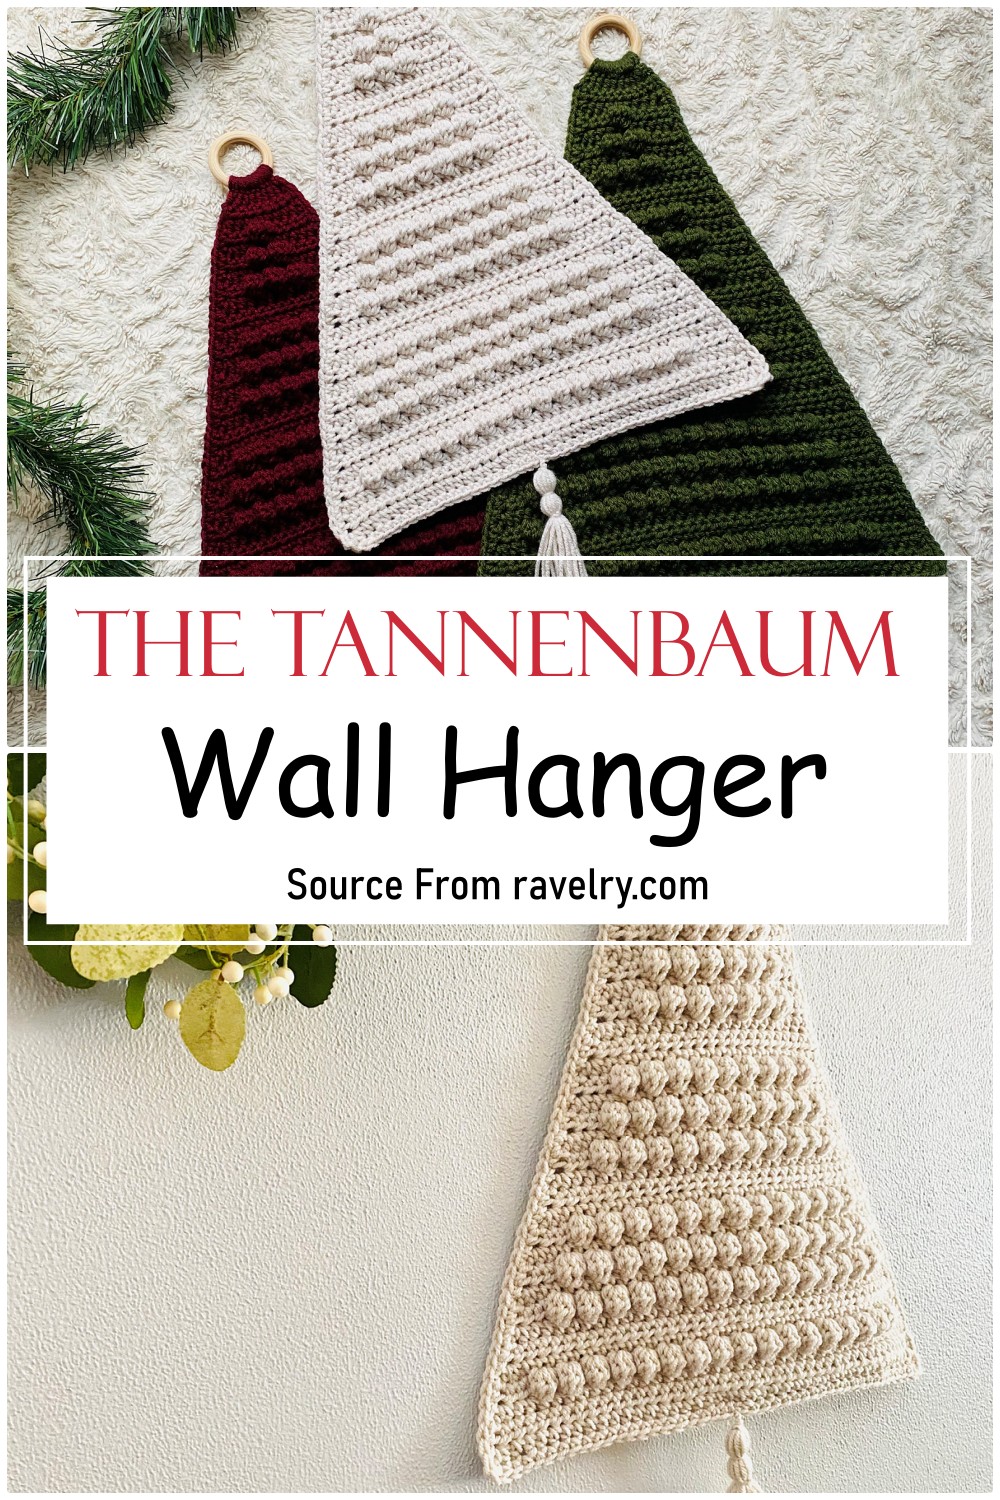 The Tannenbaum Wall Hanger